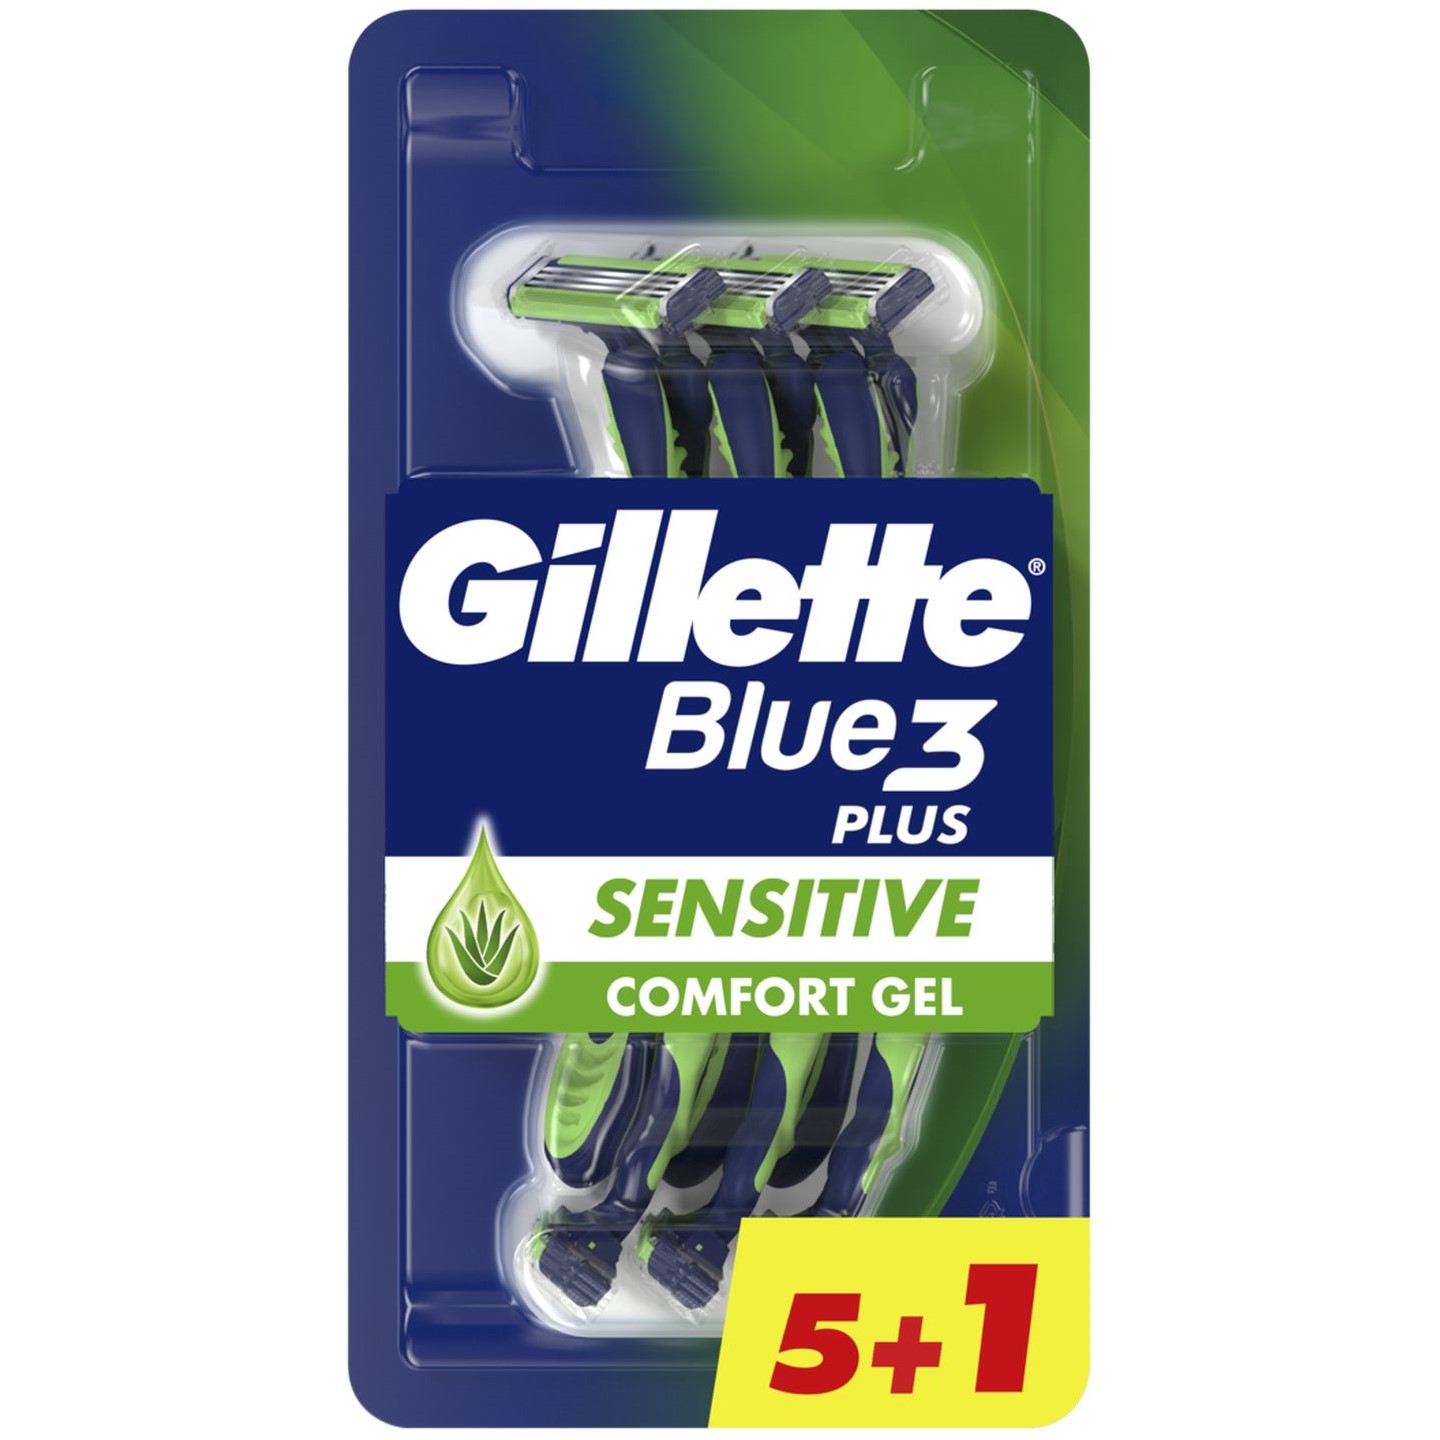 Одноразовые станки для бритья Gillette Blue 3 Sensitive 6 шт. - фото 2